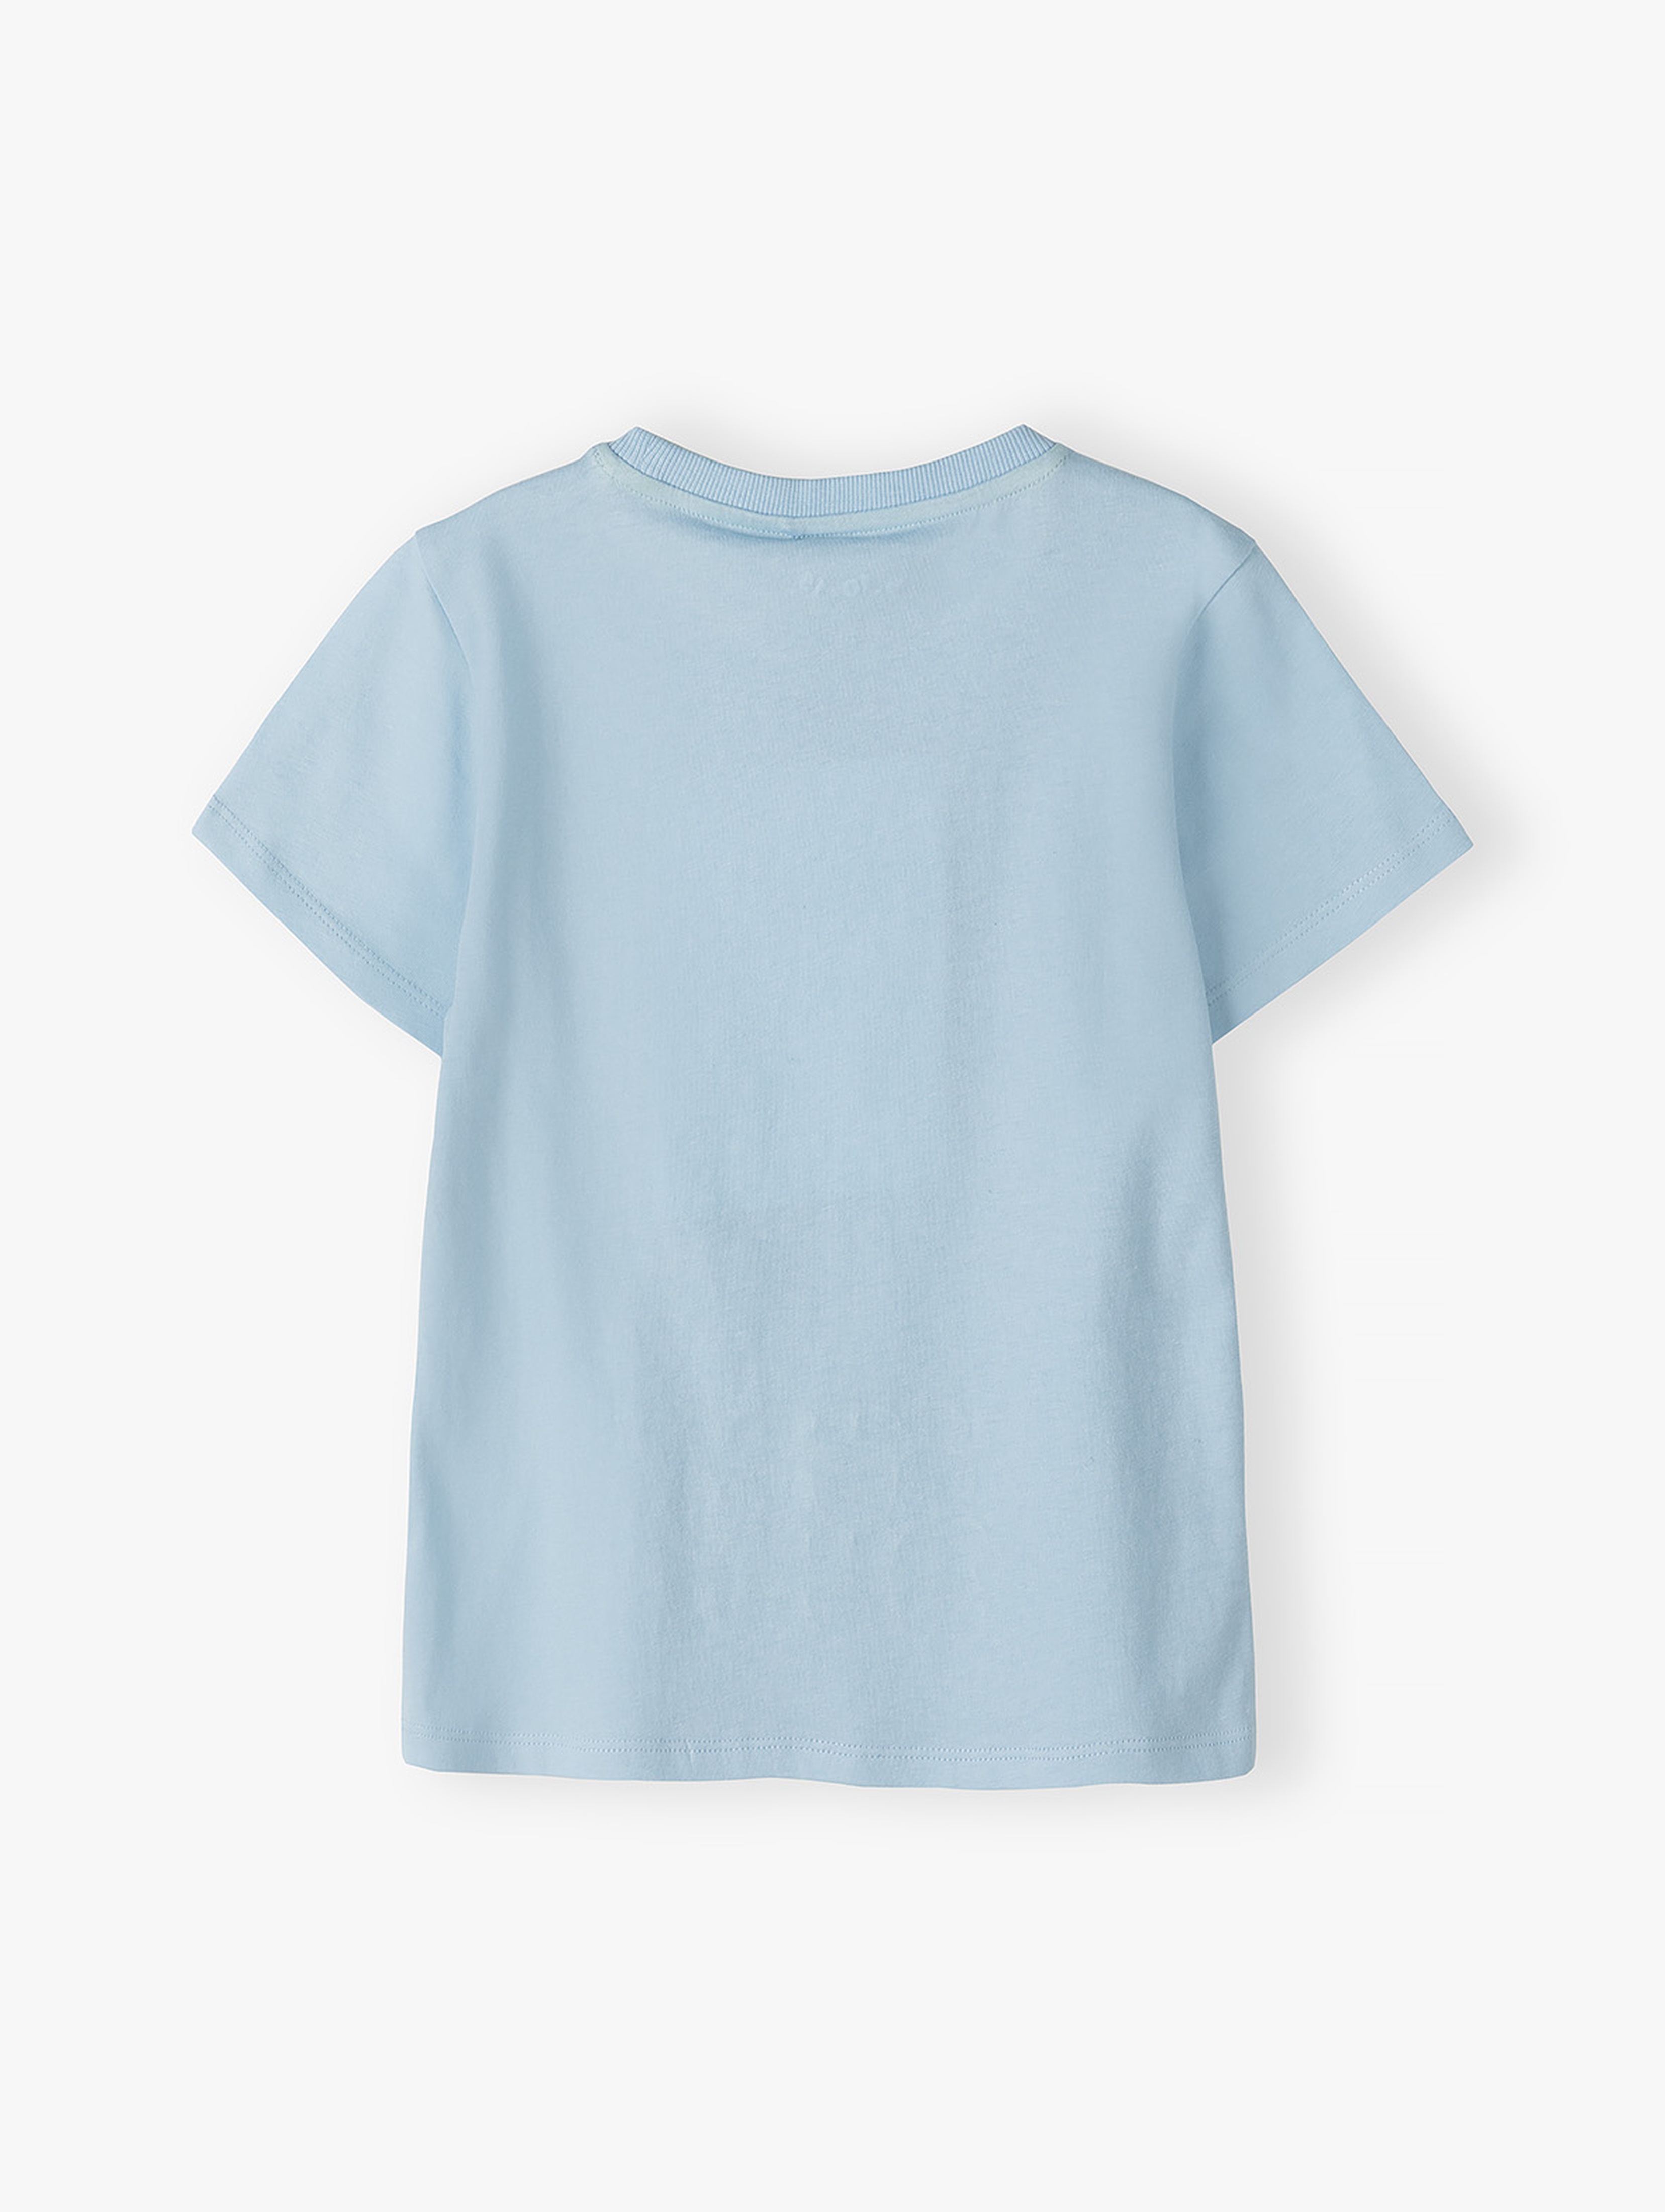 Niebieski bawełniany t-shirt dla chłopca- Surf dude